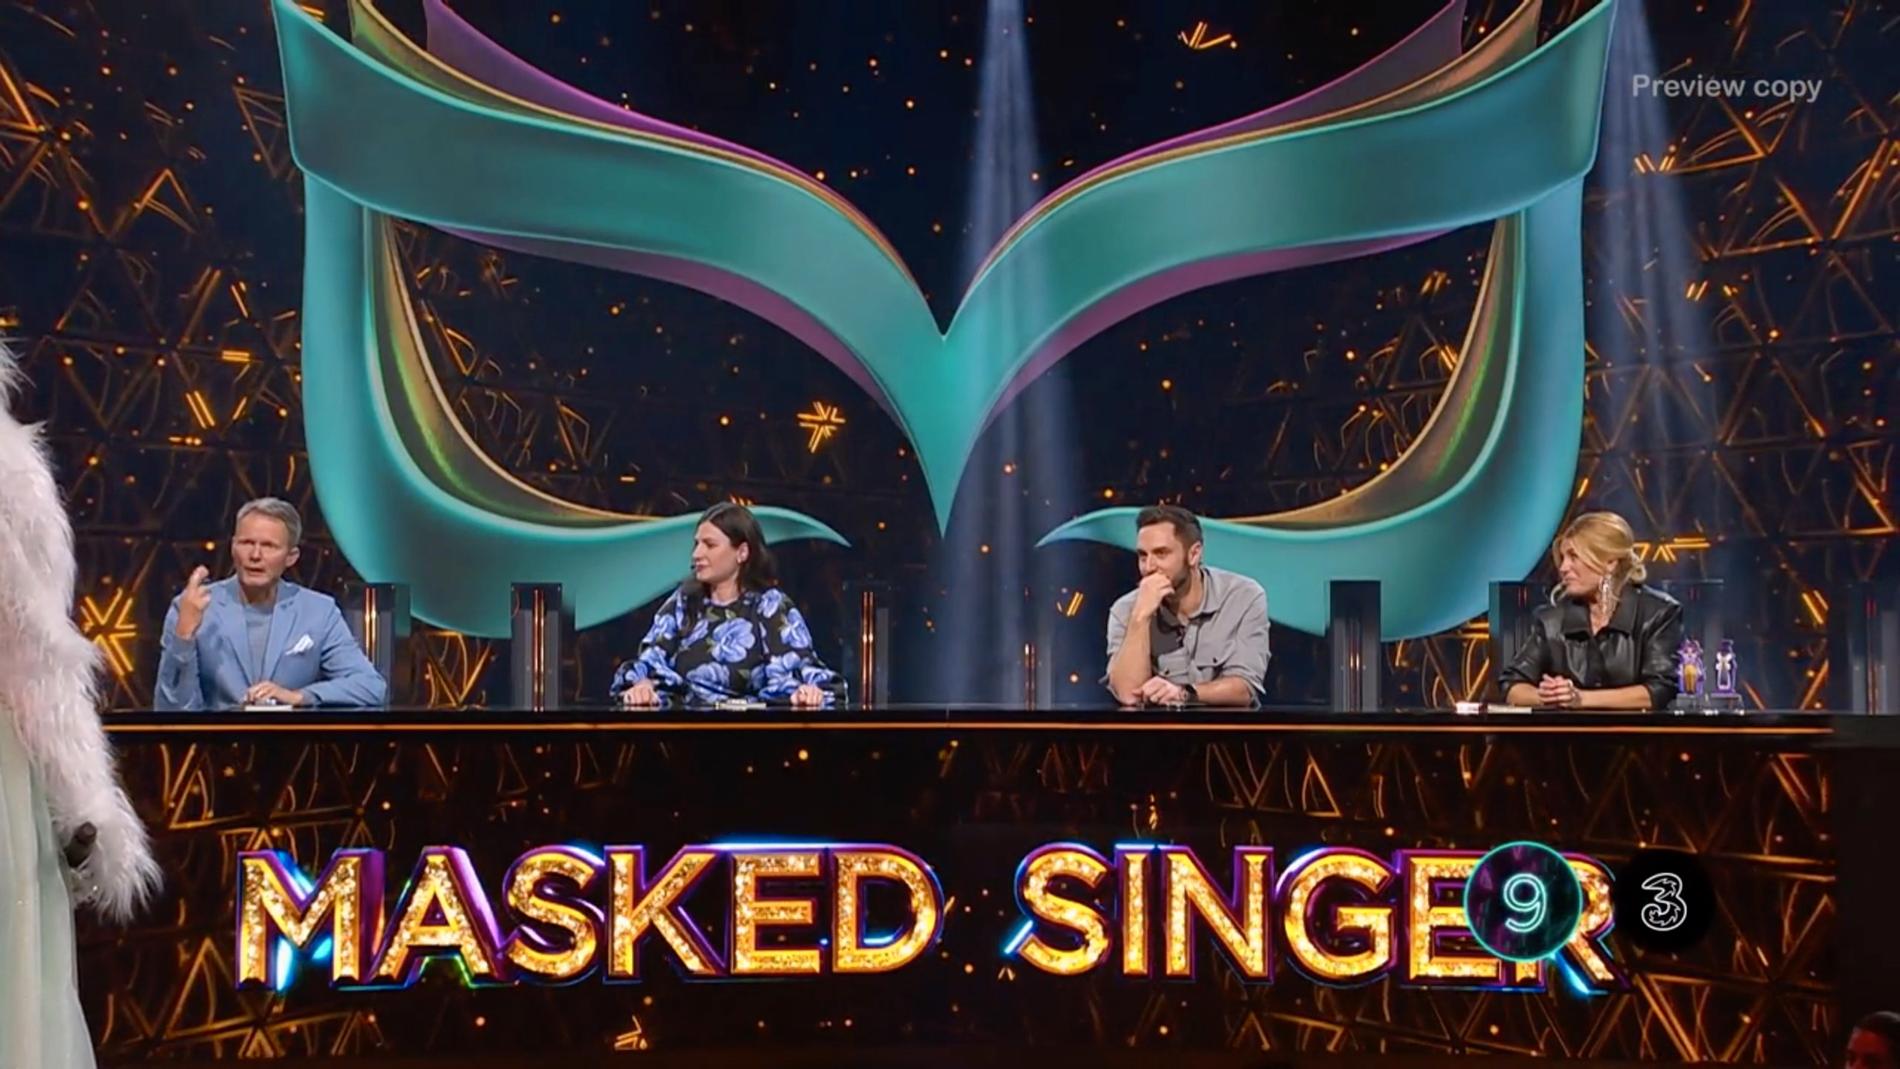 Mobiloperatörens logga dyker upp i rutan i de mest spännande minuterna under sändningen av ”Masked singer” i TV4.